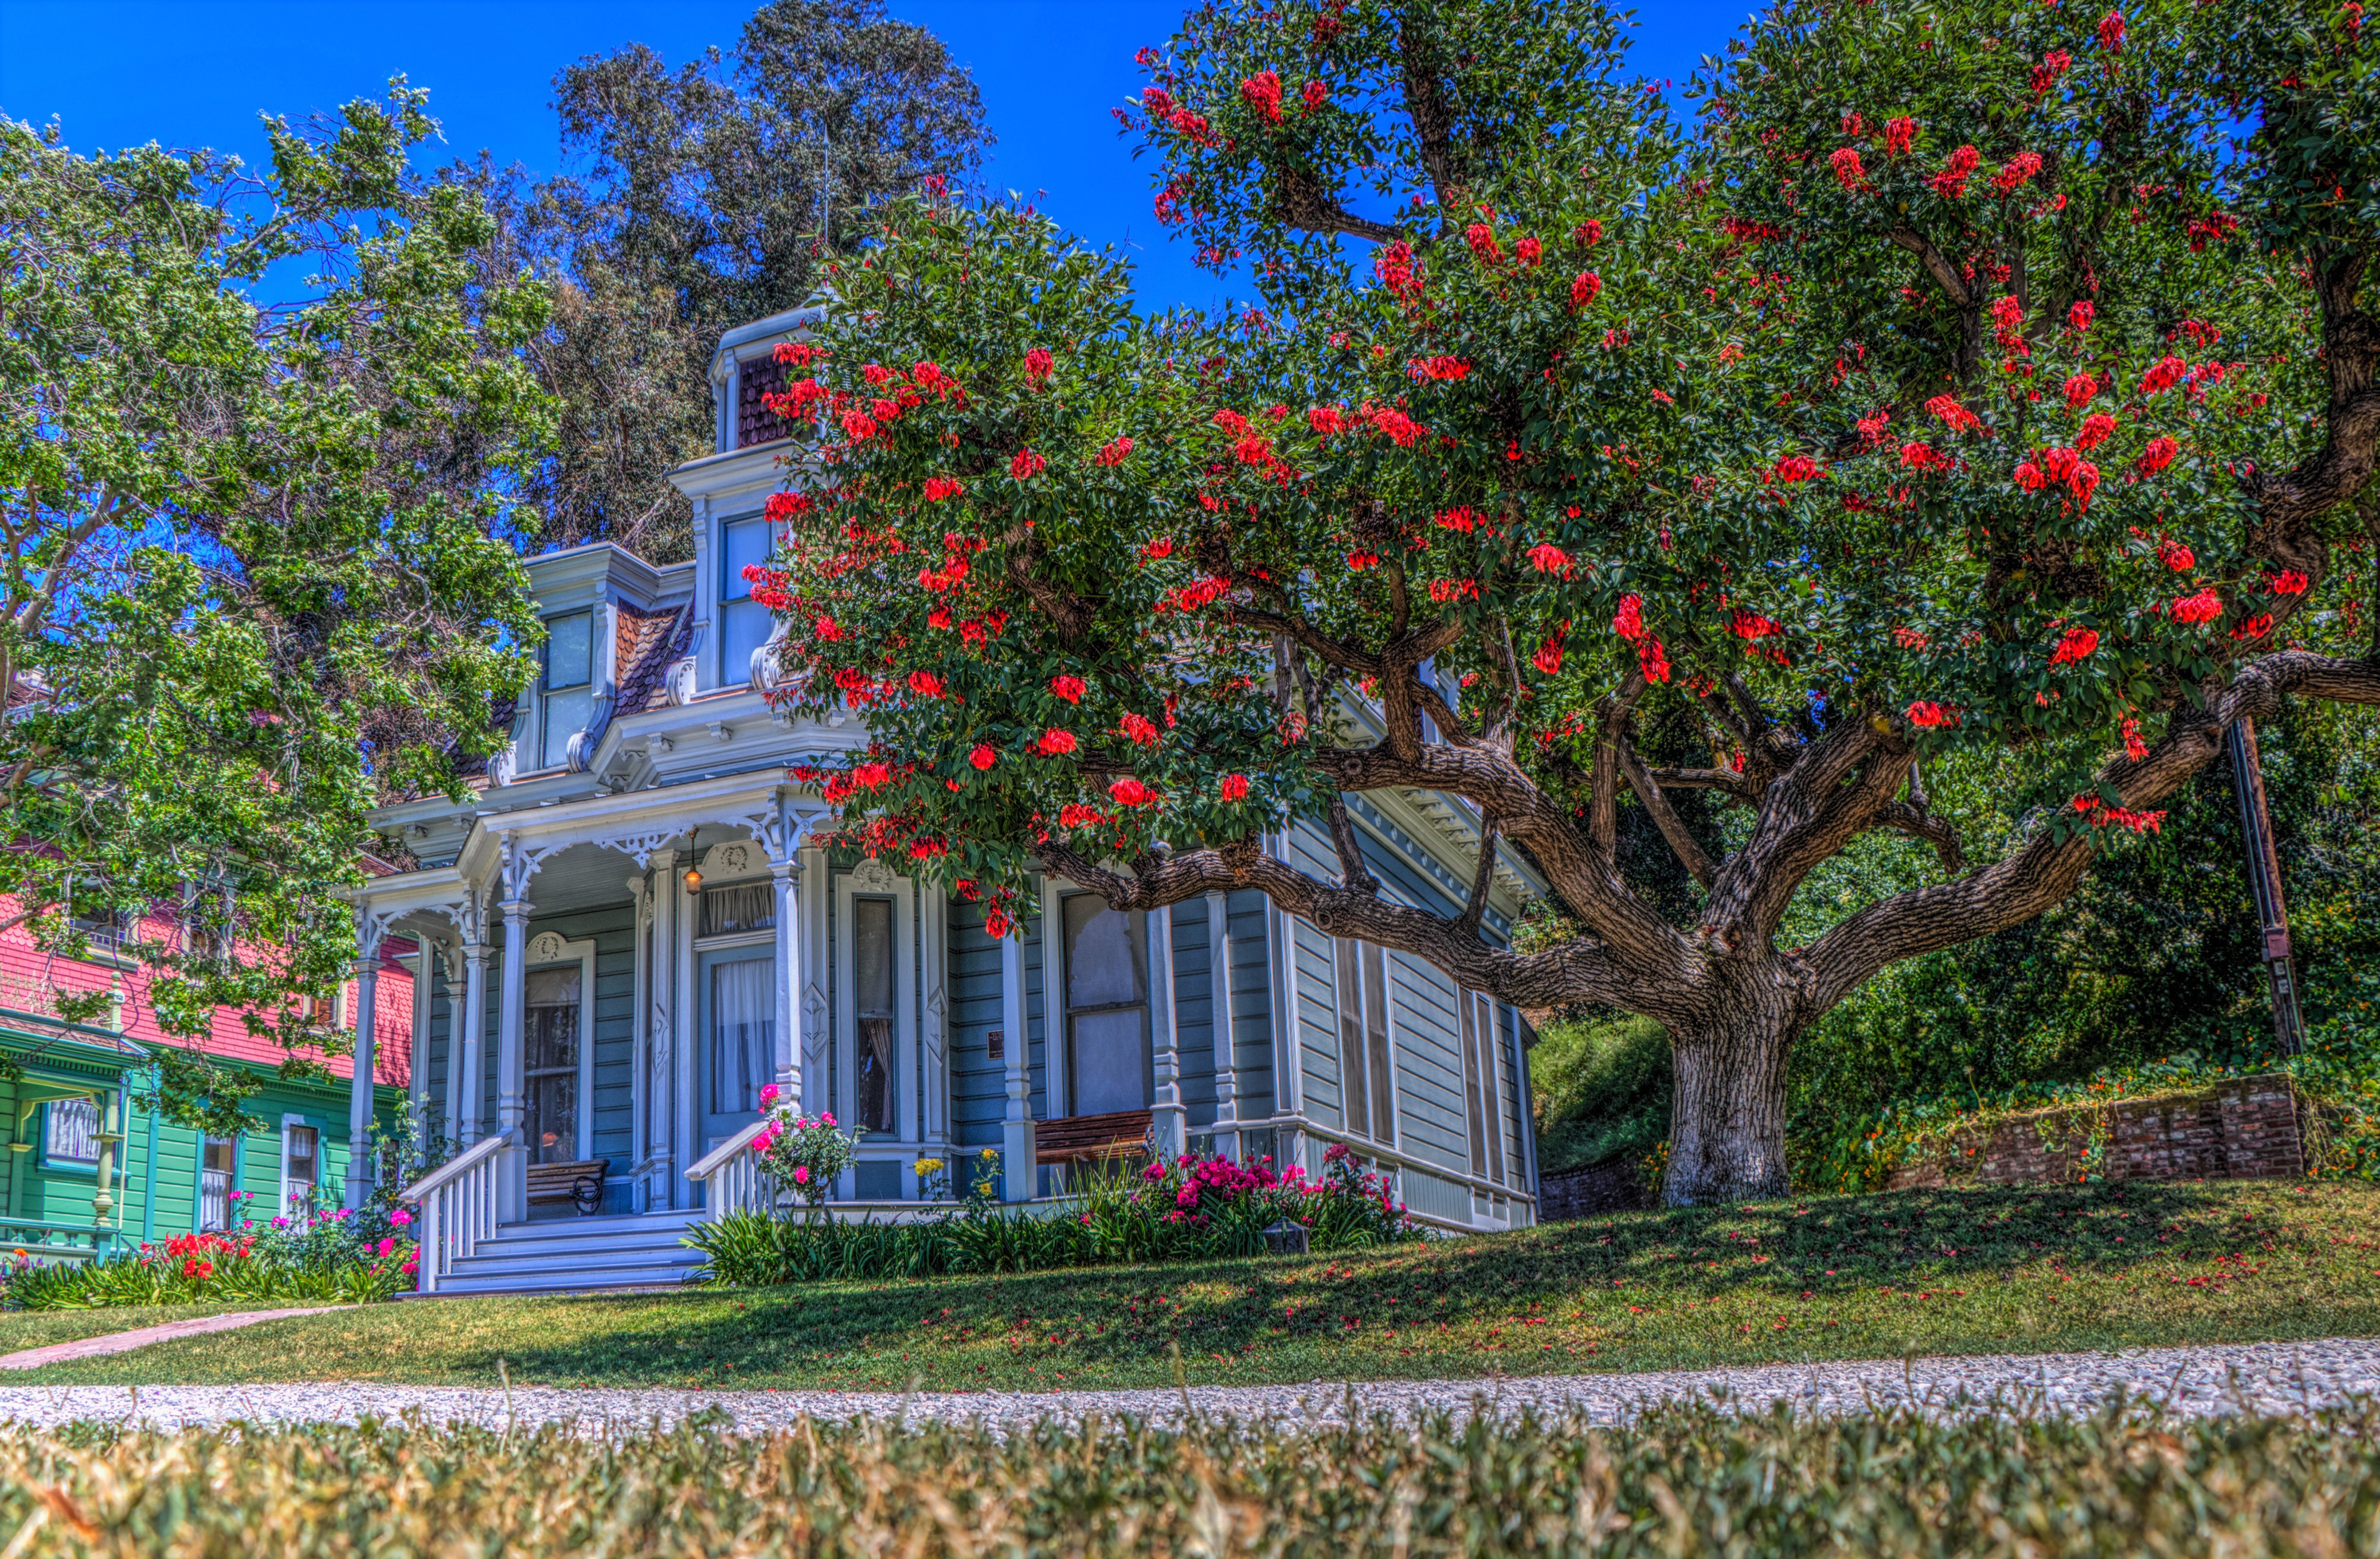 Скачать картинку Цветок, Дерево, Дом, Hdr, Калифорния, Фотографии в телефон бесплатно.